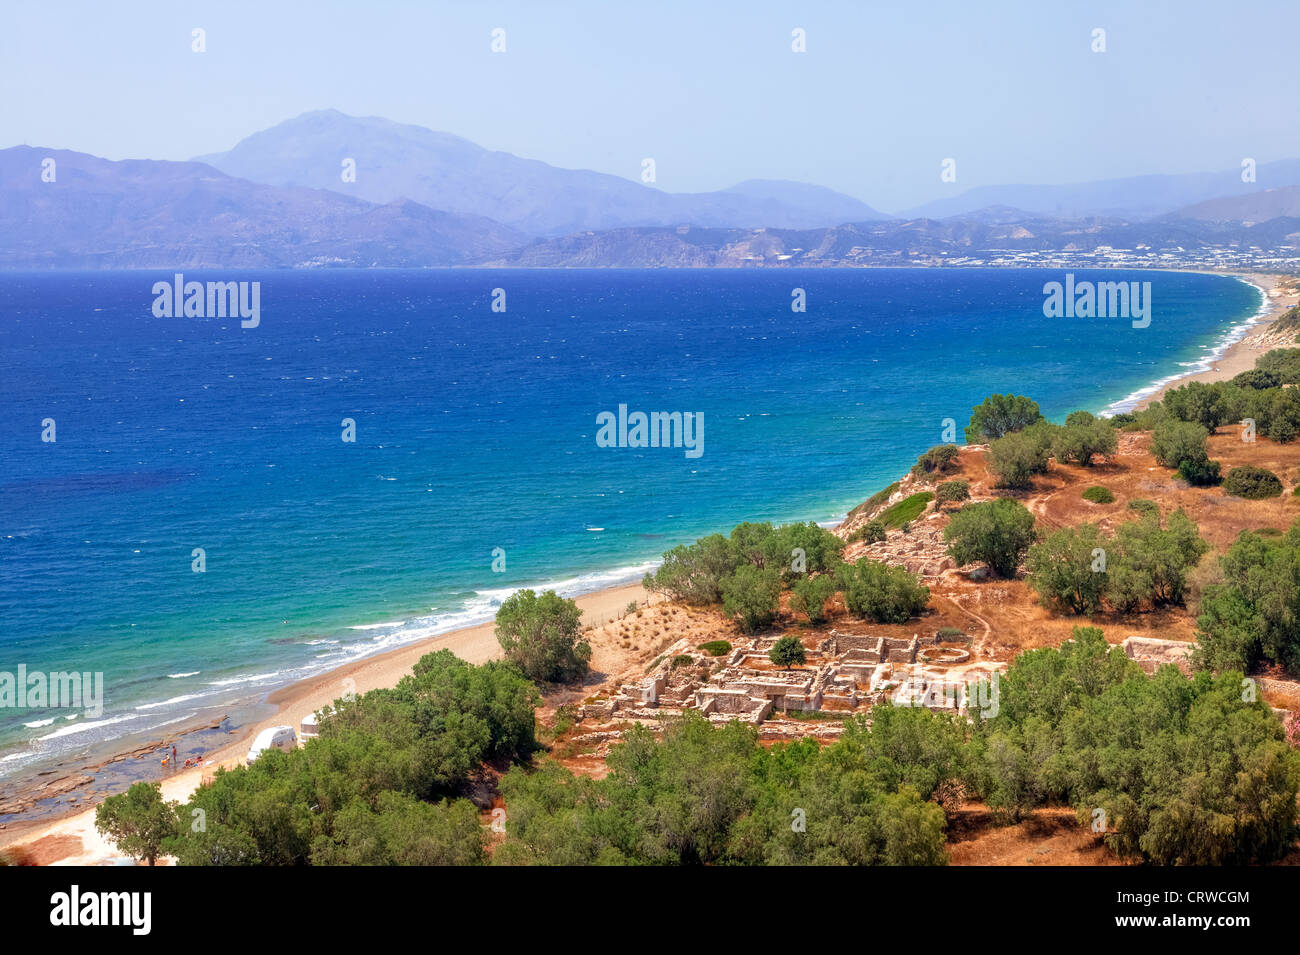 Costa sud; sullo sfondo le montagne Ida; Kommos beach, Matala, Creta, Grecia; Foto Stock